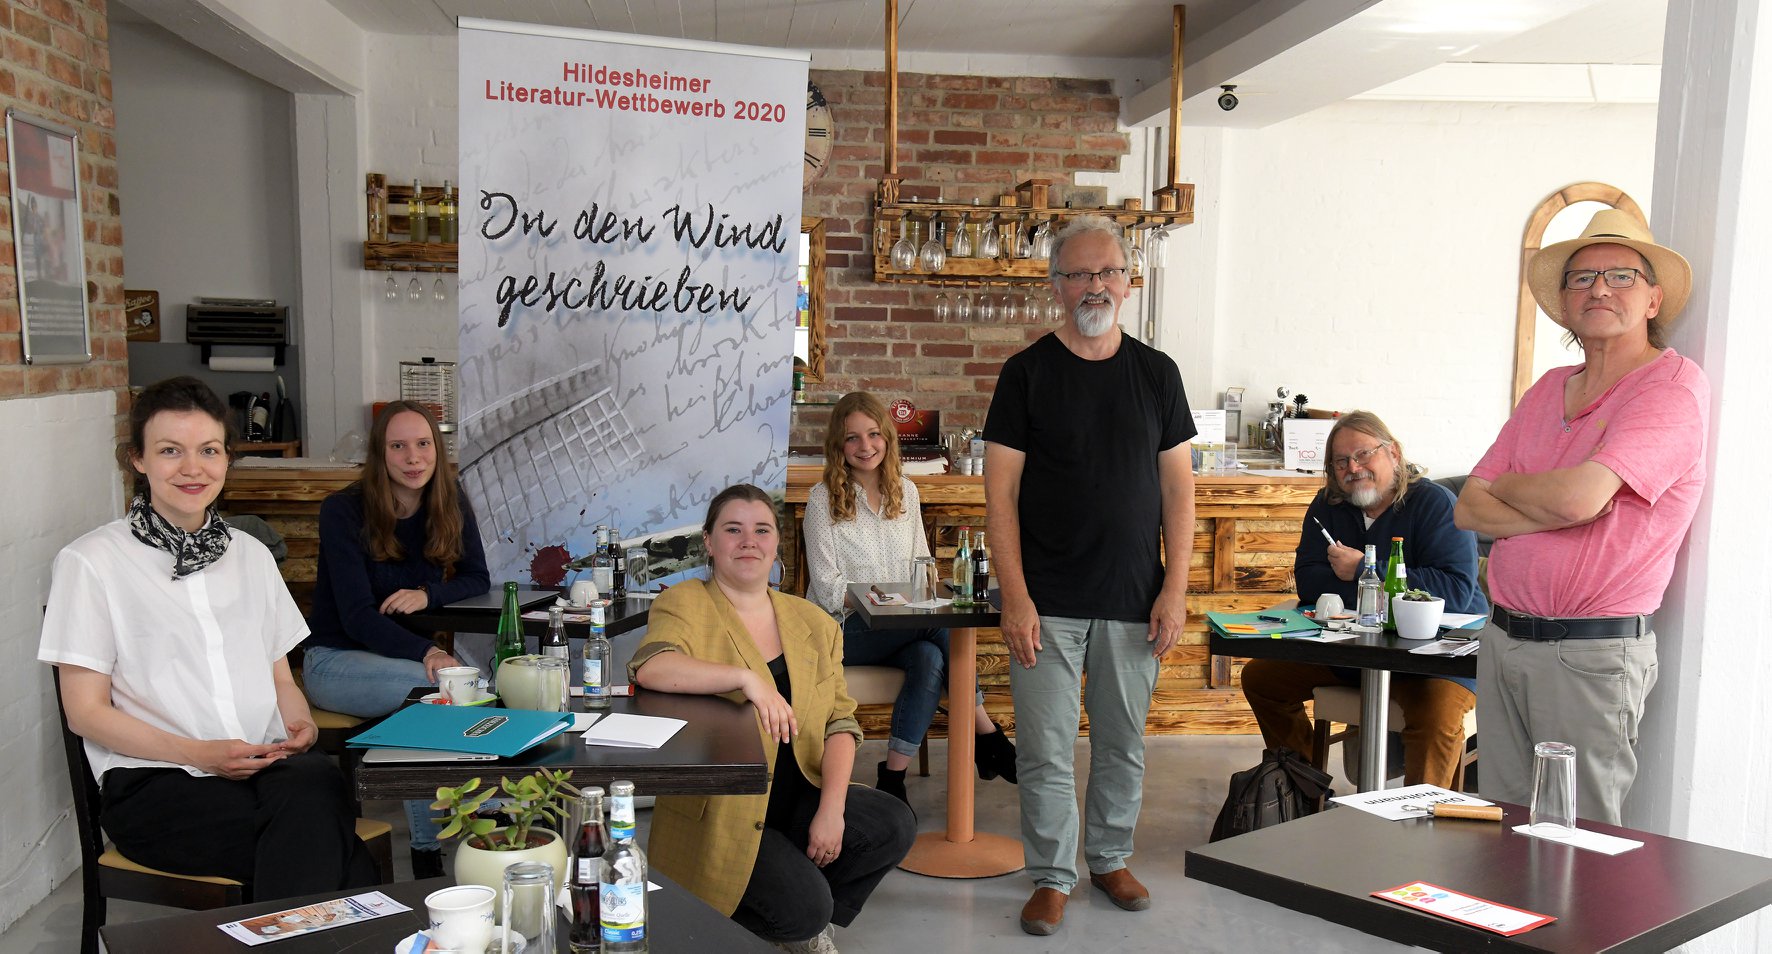 Die Jury des Hildesheimer Literatur-Wettbewerbs 2020 "In den Wind geschrieben"